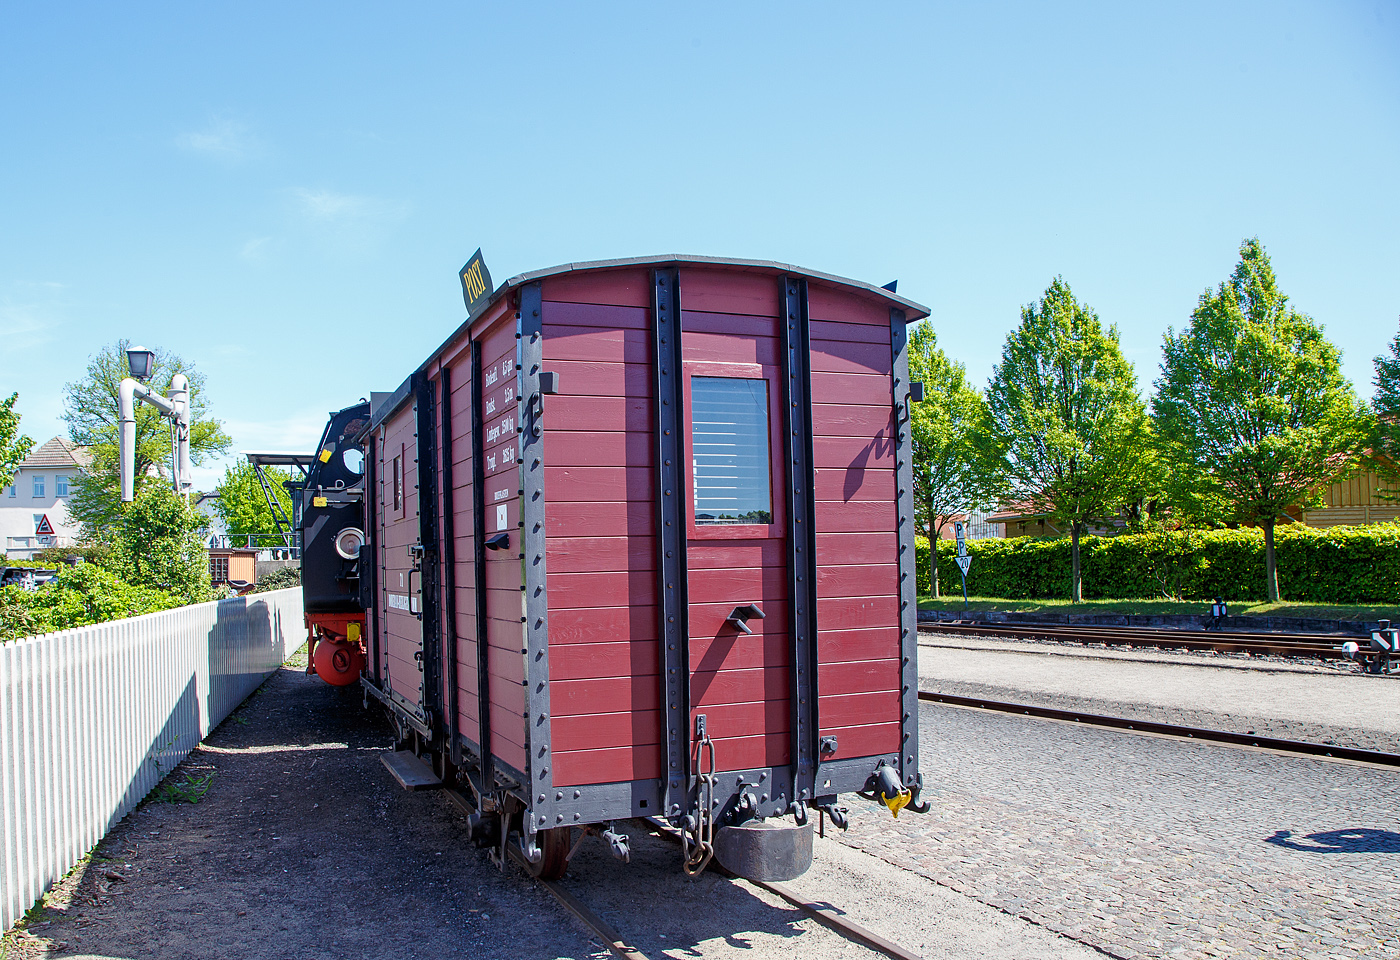 Der historische zweiachsige Postwagen 71 der damaligen DHE - Doberan-Heiligendammer-Eisenbahn (Vorgänger MBB - Mecklenburgischen Bäderbahn Molli), ex DR 98-84-01 ab-/ausgestellt im Bahnhof Ostseebad Kühlungsborn-West (bis 1938 Ostseebad Arendsee), hier am 15.05.2022. Der Wagen ist Eigentum und Leihgabe vom VTM.

Der Post-/ Packwagen wurde 1886 von der Waggonfabrik P. Herbrand & Cie. in Köln-Ehrenfeld gebaut und an die damalige Doberan-Heiligendammer-Eisenbahn (DHE) geliefert. Eine Rekonstruktion erfolgte 2000 – 2001 durch den Verein zur Traditionspflege des Molli e. V..

Die DHE wurde im März 1890 verstaatlichte und in die Großherzoglich Mecklenburgische Friedrich-Franz-Eisenbahn eingliedert. Ab dem 1. April 1920 gehörte sie zur Deutschen Reichsbahn. So kam der Molli nach der deutschen Wiedervereinigung zur DB AG. Zum 01.10.1995 wurde die Mecklenburgische Bäderbahn Molli GmbH gegründet und übernahm fortan die 15,4 km lange Strecke zwischen Kühlungsborn und Bad Doberan von der Deutschen Bahn AG.

TECHNISCH DATEN des Wagens:
Spurweite: 900 mm
Gattung: P
Anzahl der Achsen: 2
Drehzapfenabstand: 2.500 mm
Ladefläche: 8,3 m²
Tragfähigkeit: 2.625 kg
